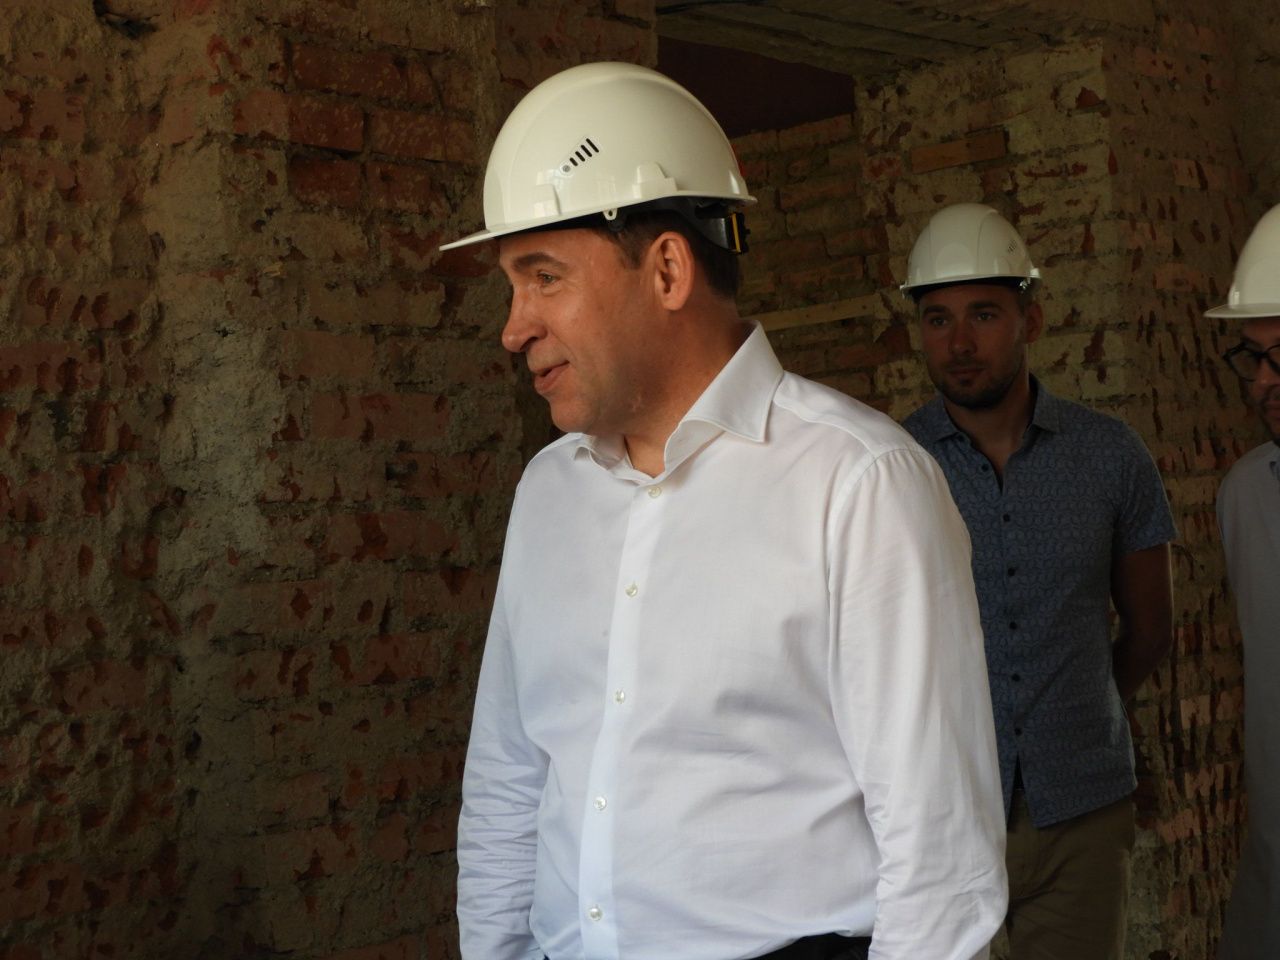 Программа модернизации коммунальной сферы, презентованная Евгением Куйвашевым, утверждена федерацией